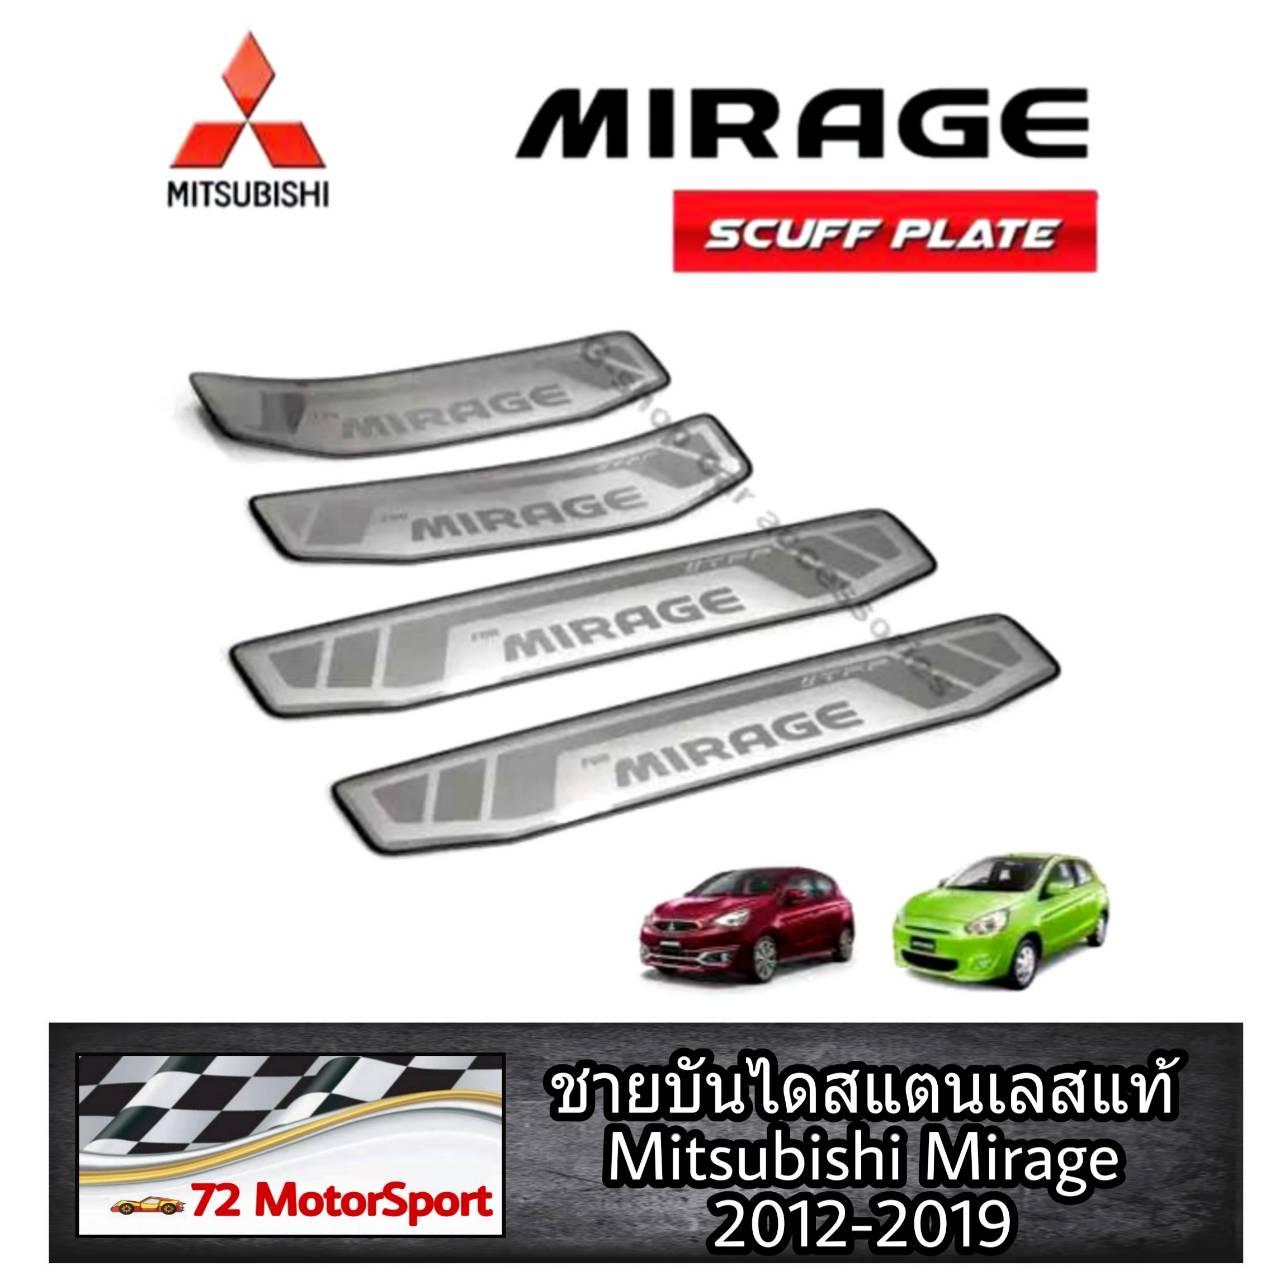 Mitsubishi Mirage ชายบันไดสแตนเลสแท้ ปี2012-2020 กันรอยประตูมิราจ มิตซู กาบบันไดข้าง บันไดข้างประตู กันรอยขีดข่วน mirage2020 ของแต่งmirage ชายบันไดmirage